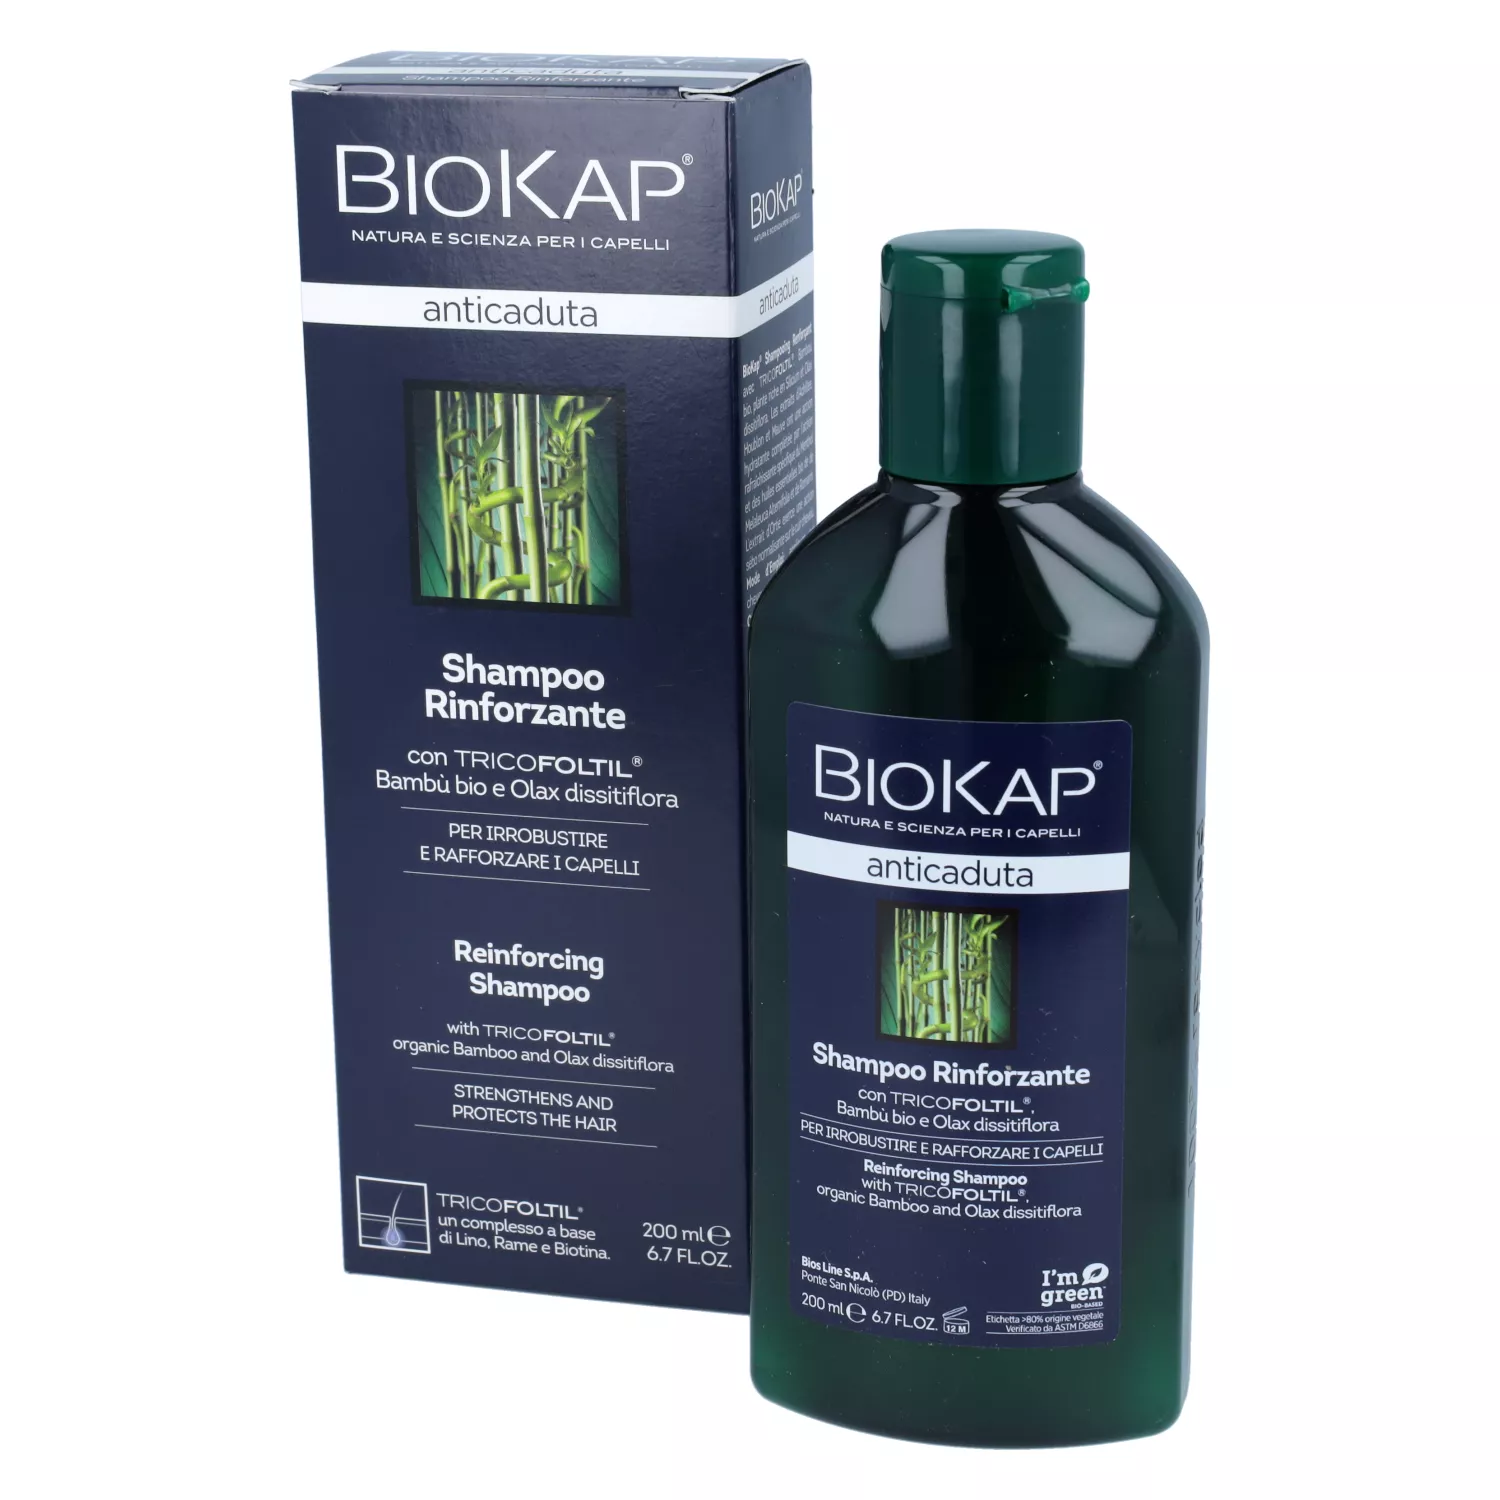 biokap szampon przeciw wypadaniu wlosow